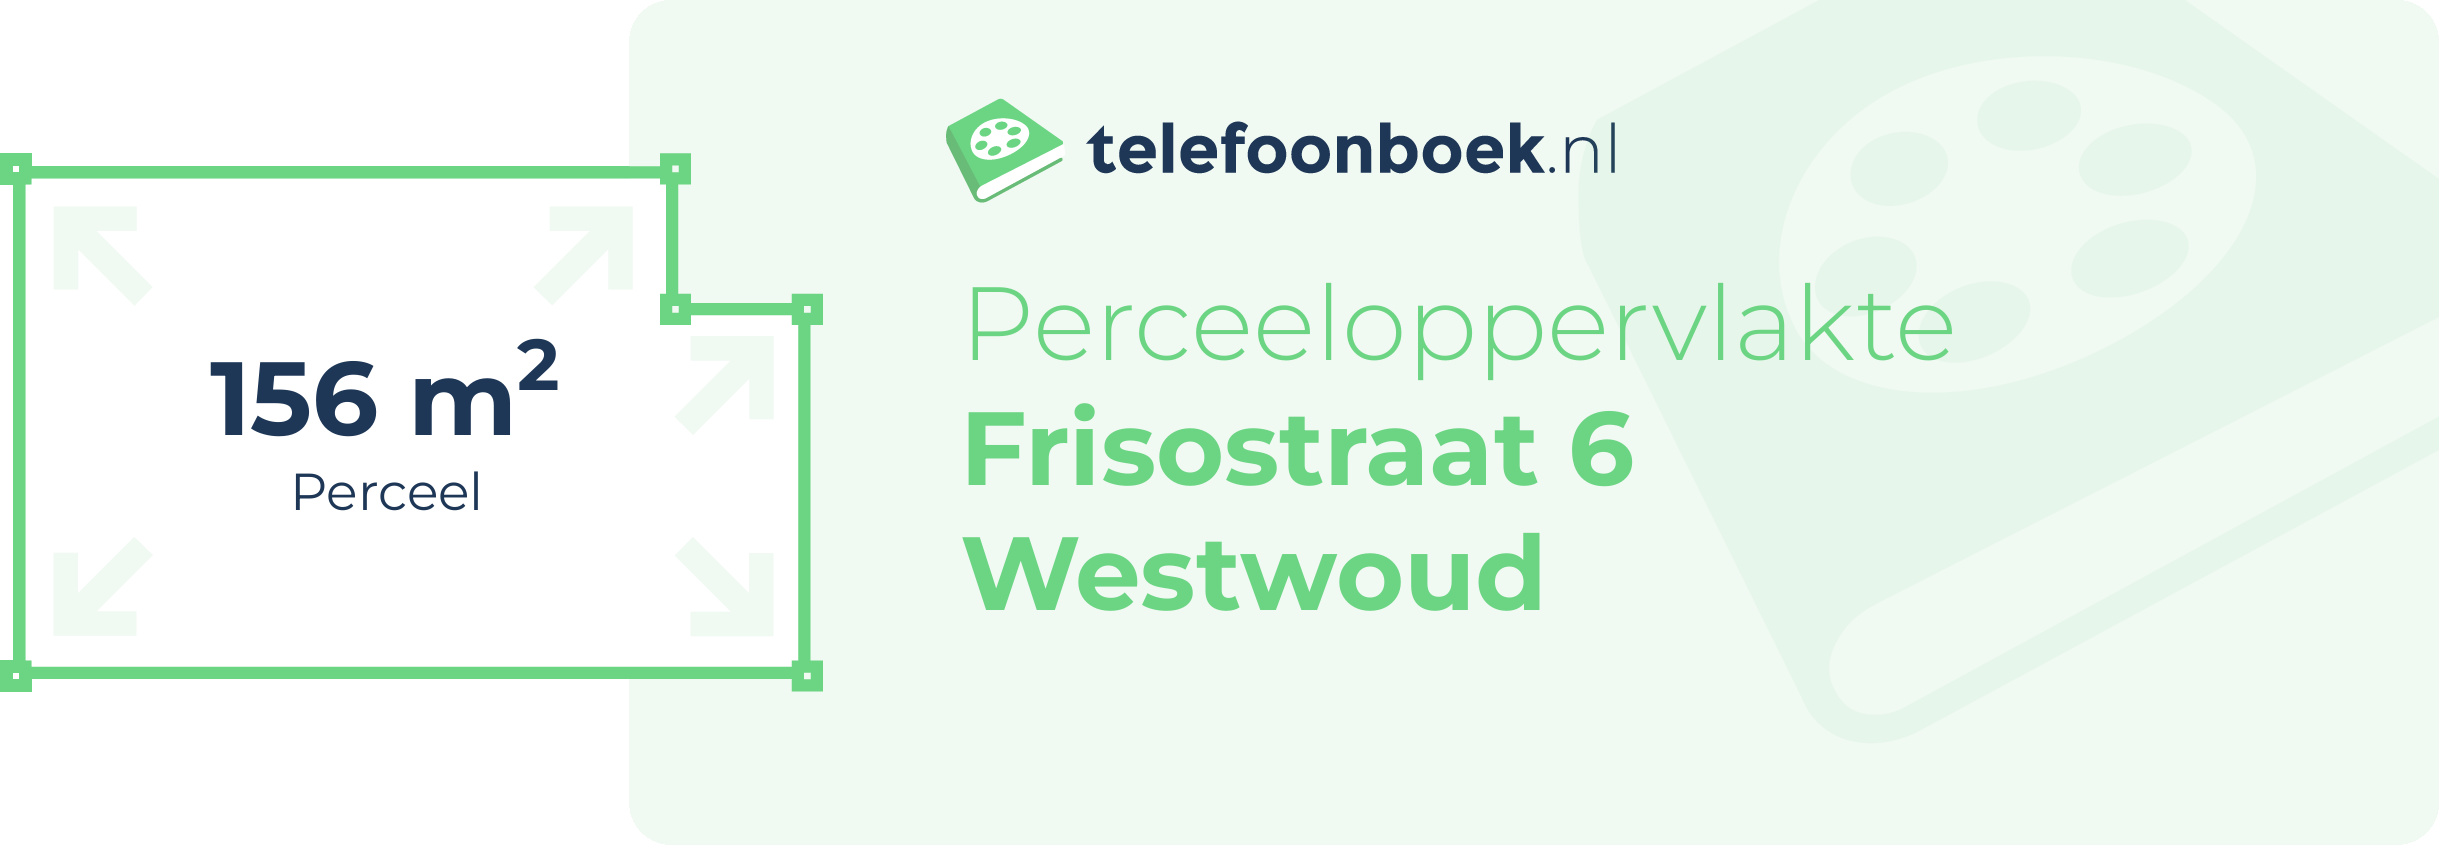 Perceeloppervlakte Frisostraat 6 Westwoud